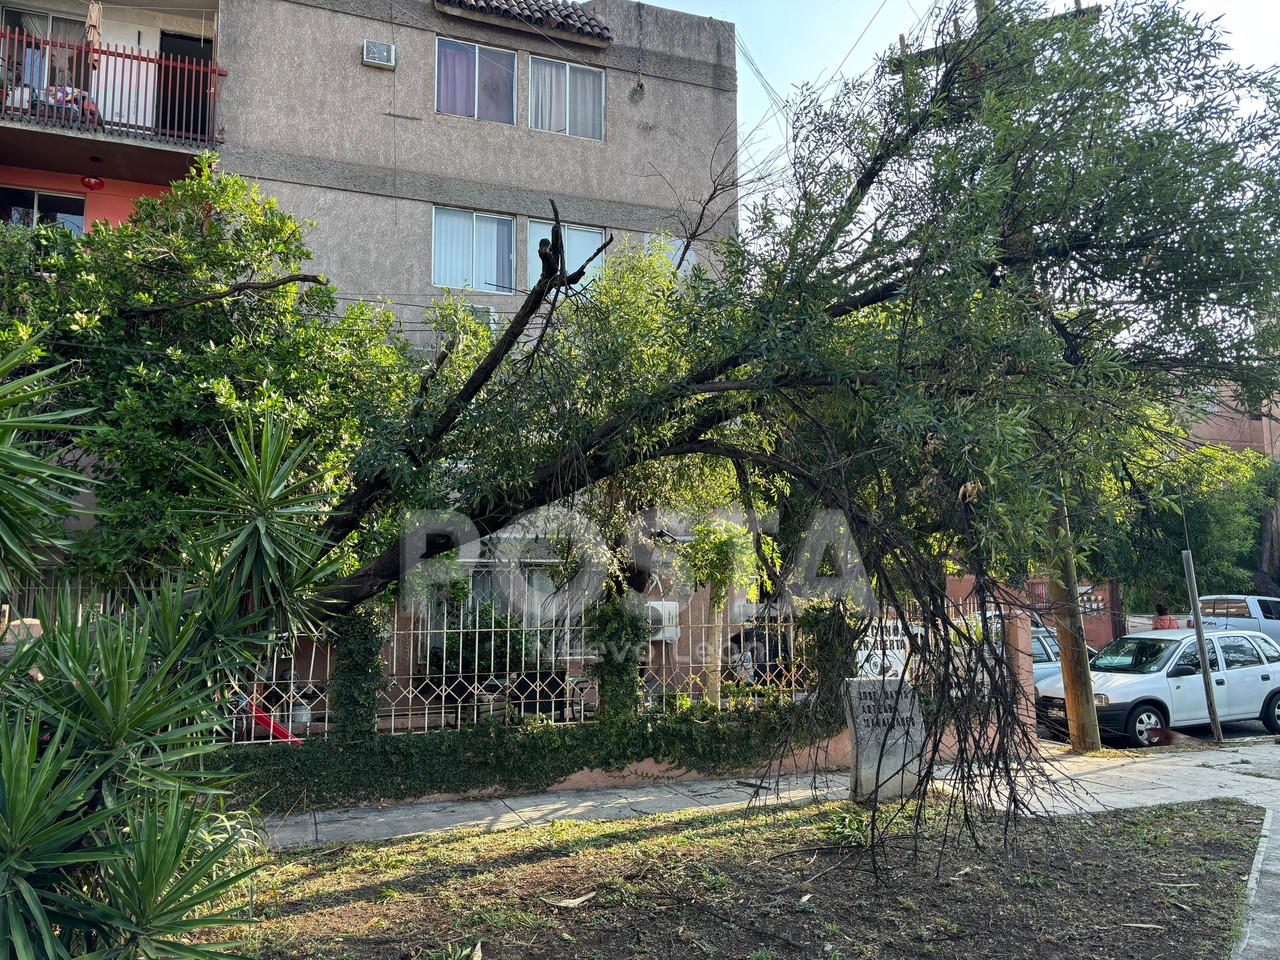 El árbol que cayó afectó el sistema de cables que pasan por los domicilios. Foto: Diego Beltrán.